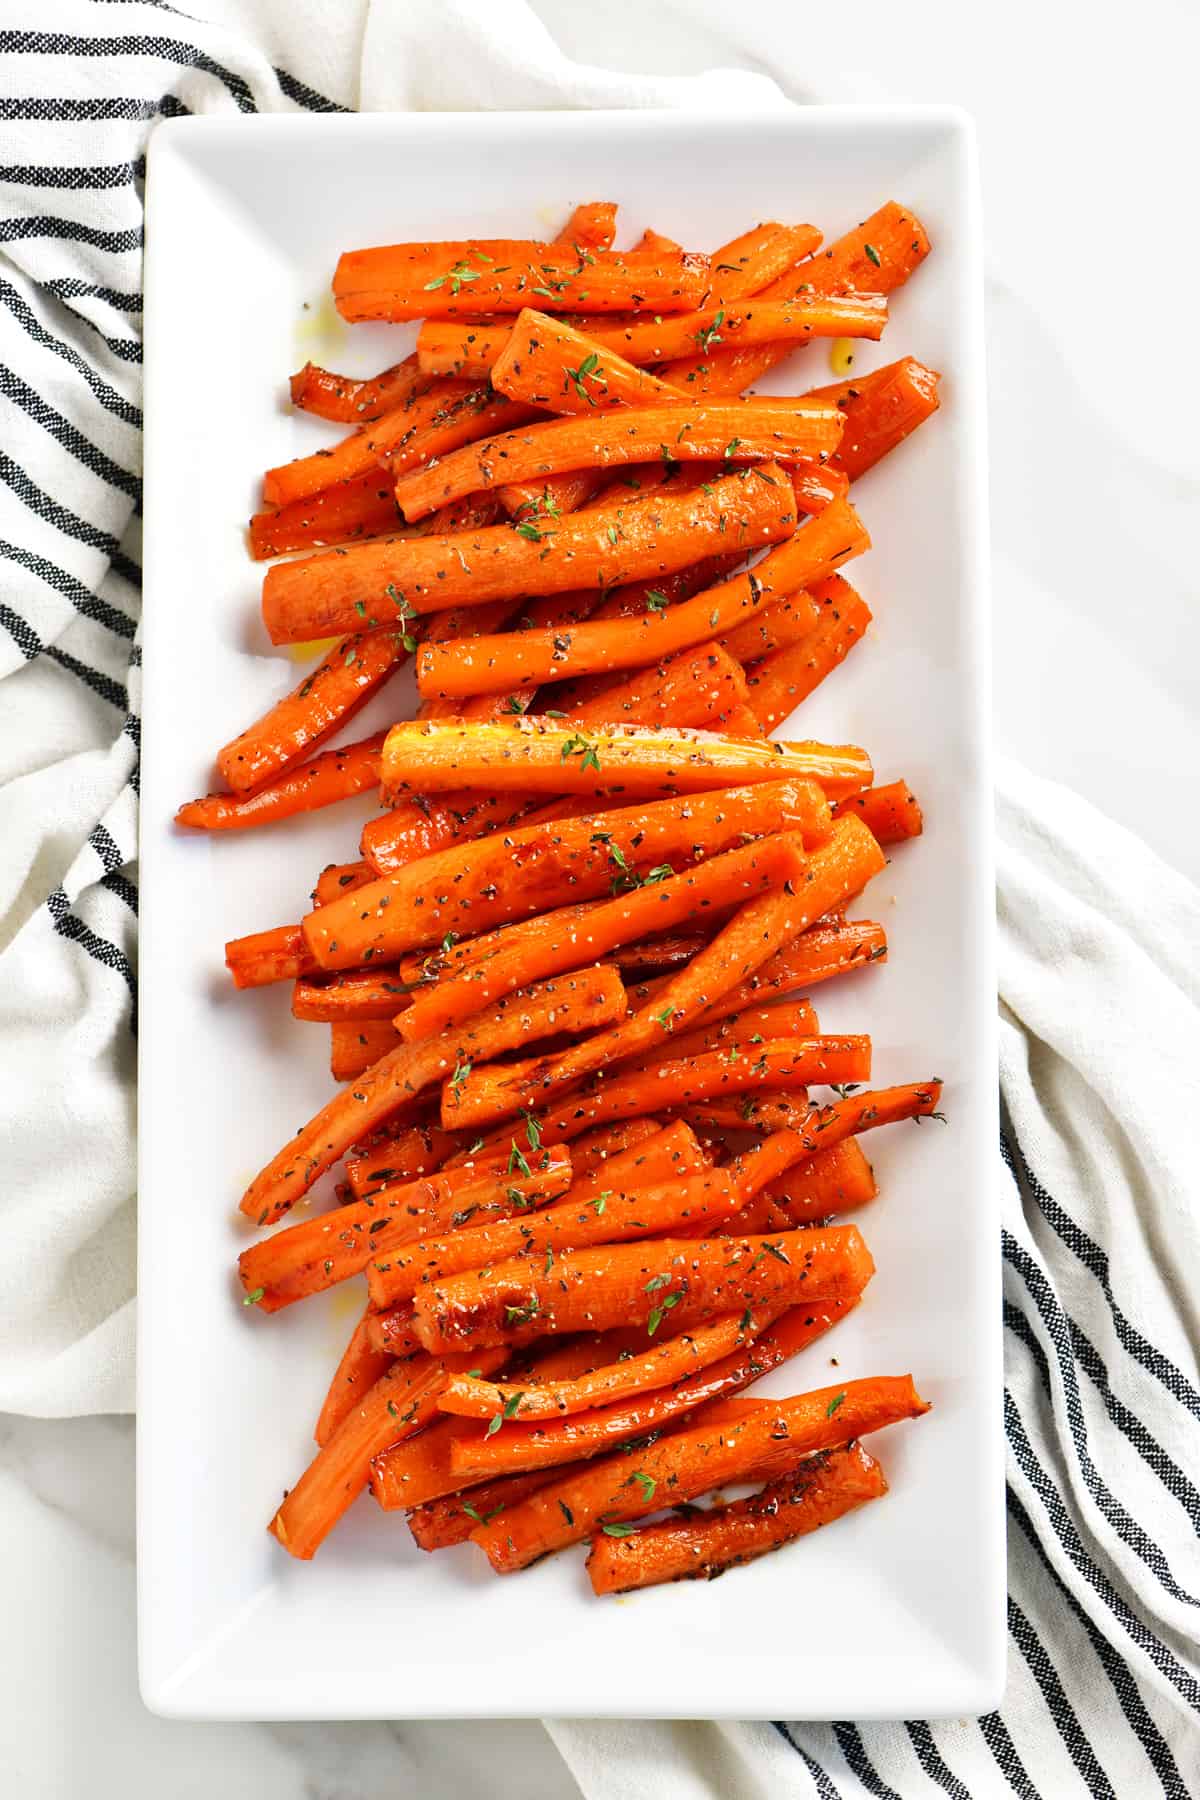 Honey glazed carrots on a platter.